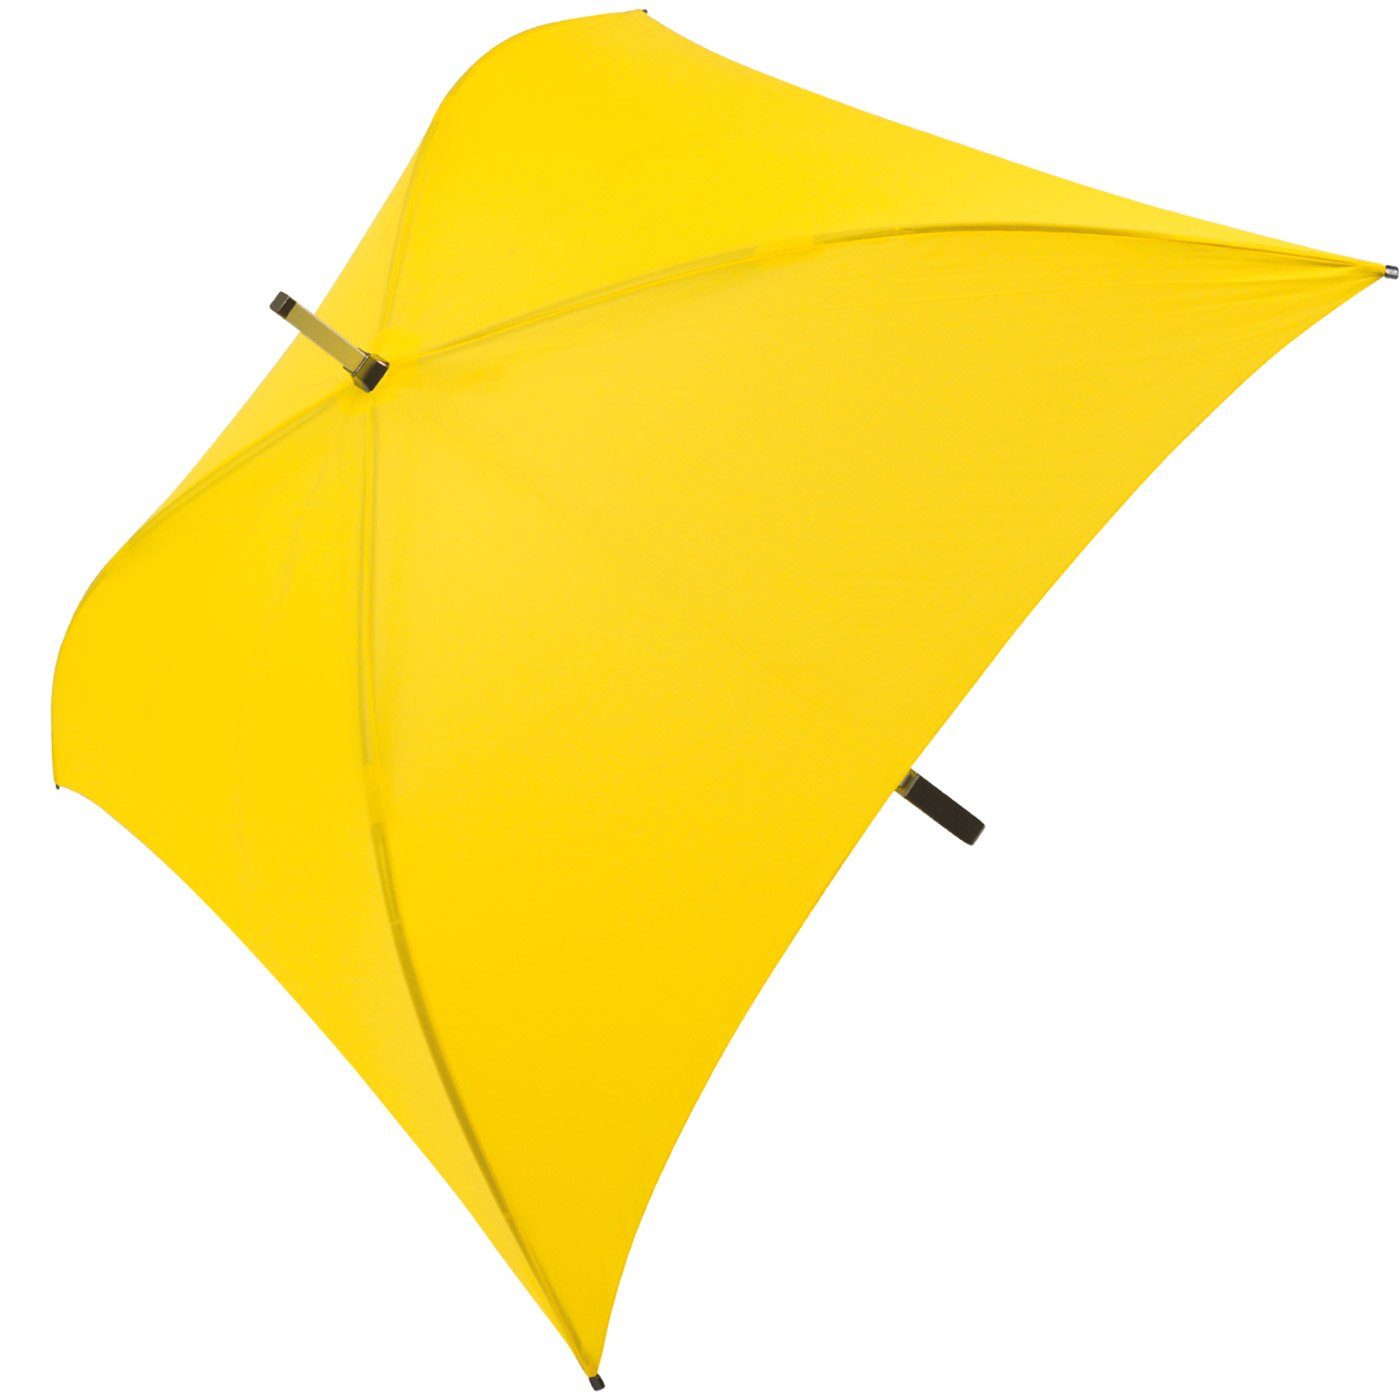 All Regenschirm ganz quadratischer Langregenschirm besondere voll Regenschirm, Impliva Square® gelb der